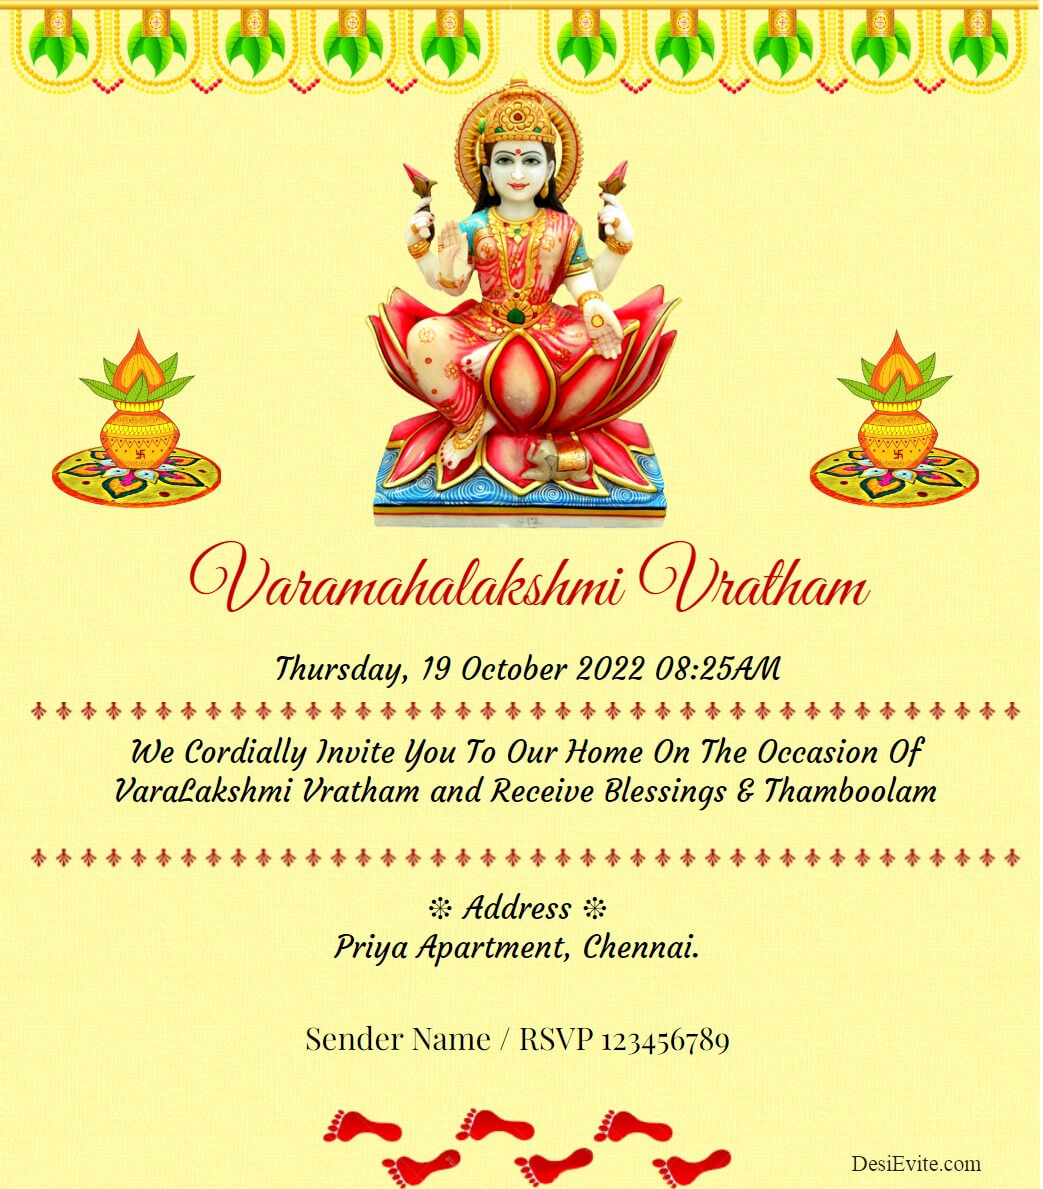 Varamahalakshmi Vratham e-card